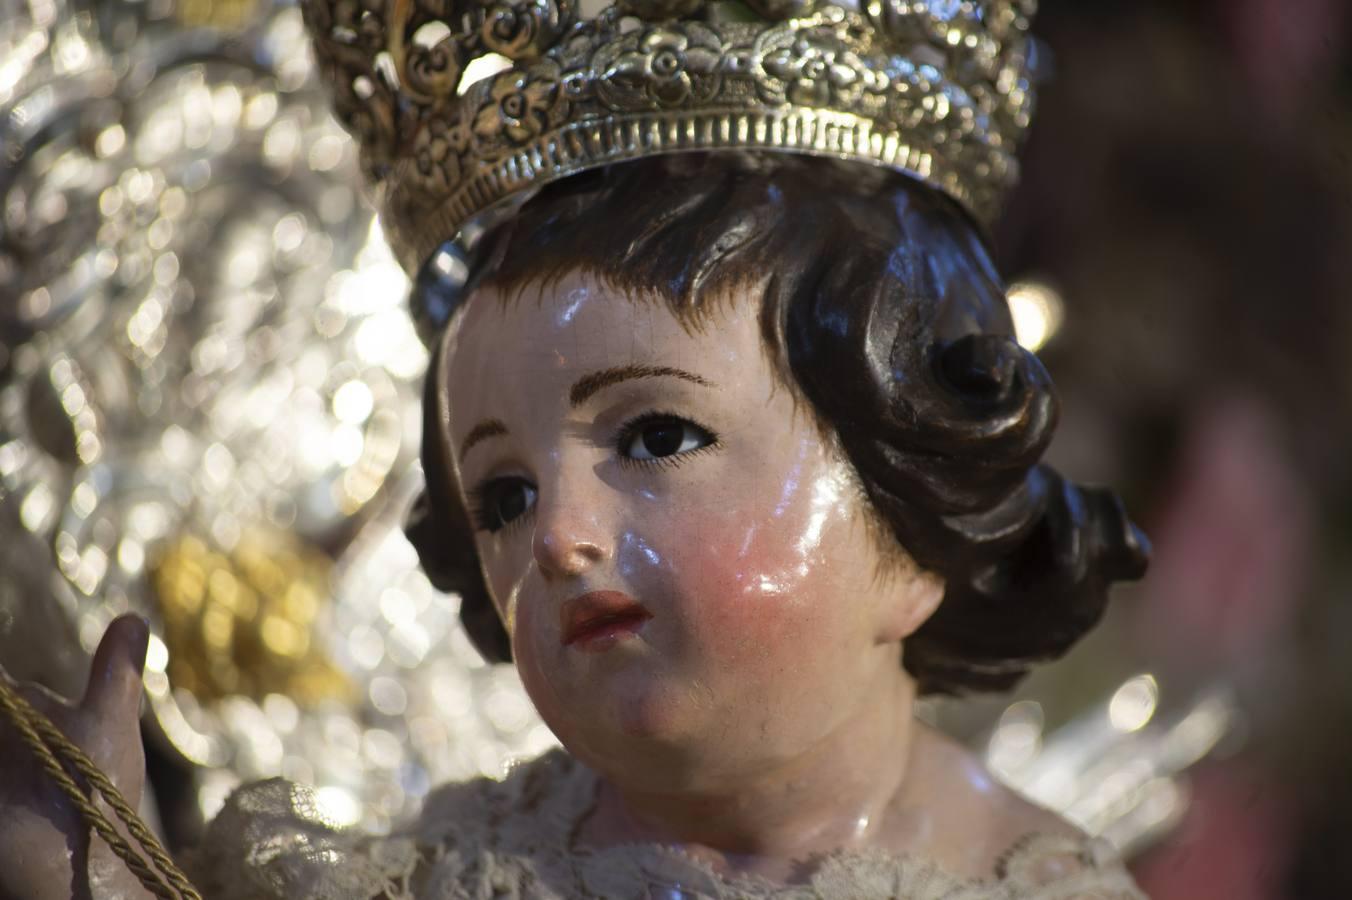 El regreso de la Virgen del Carmen de Santa Ana tras la restauración